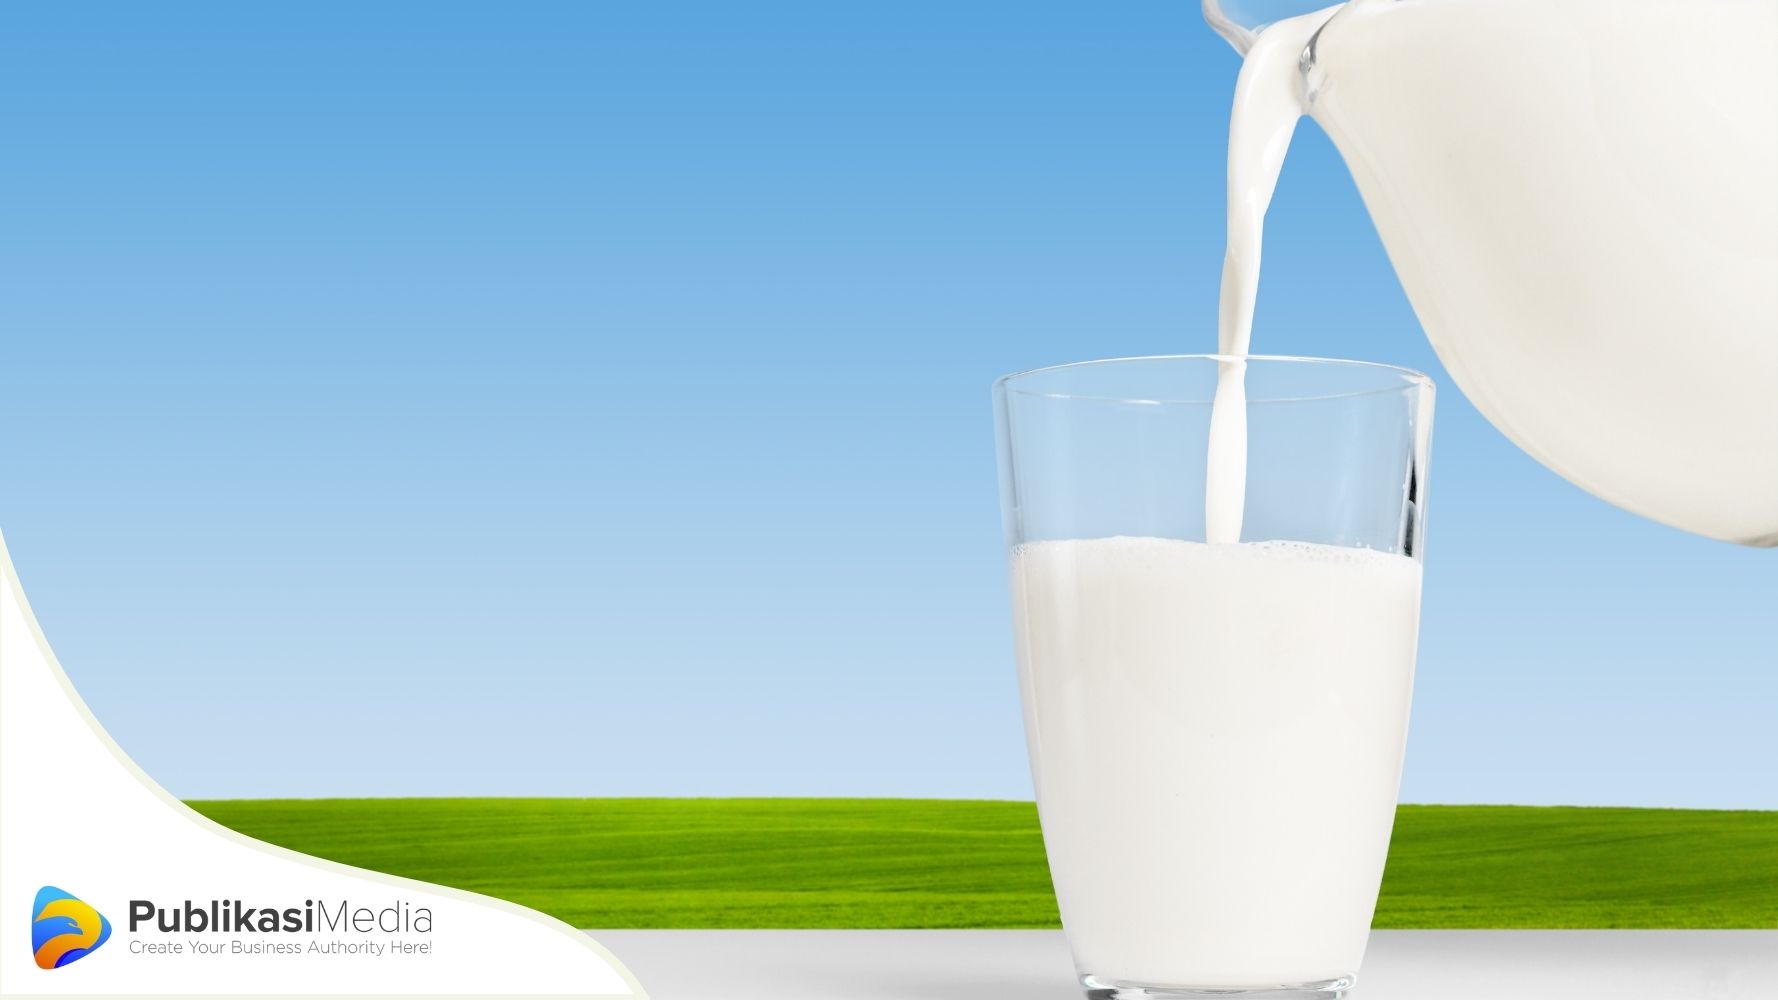 contoh iklan minuman susu